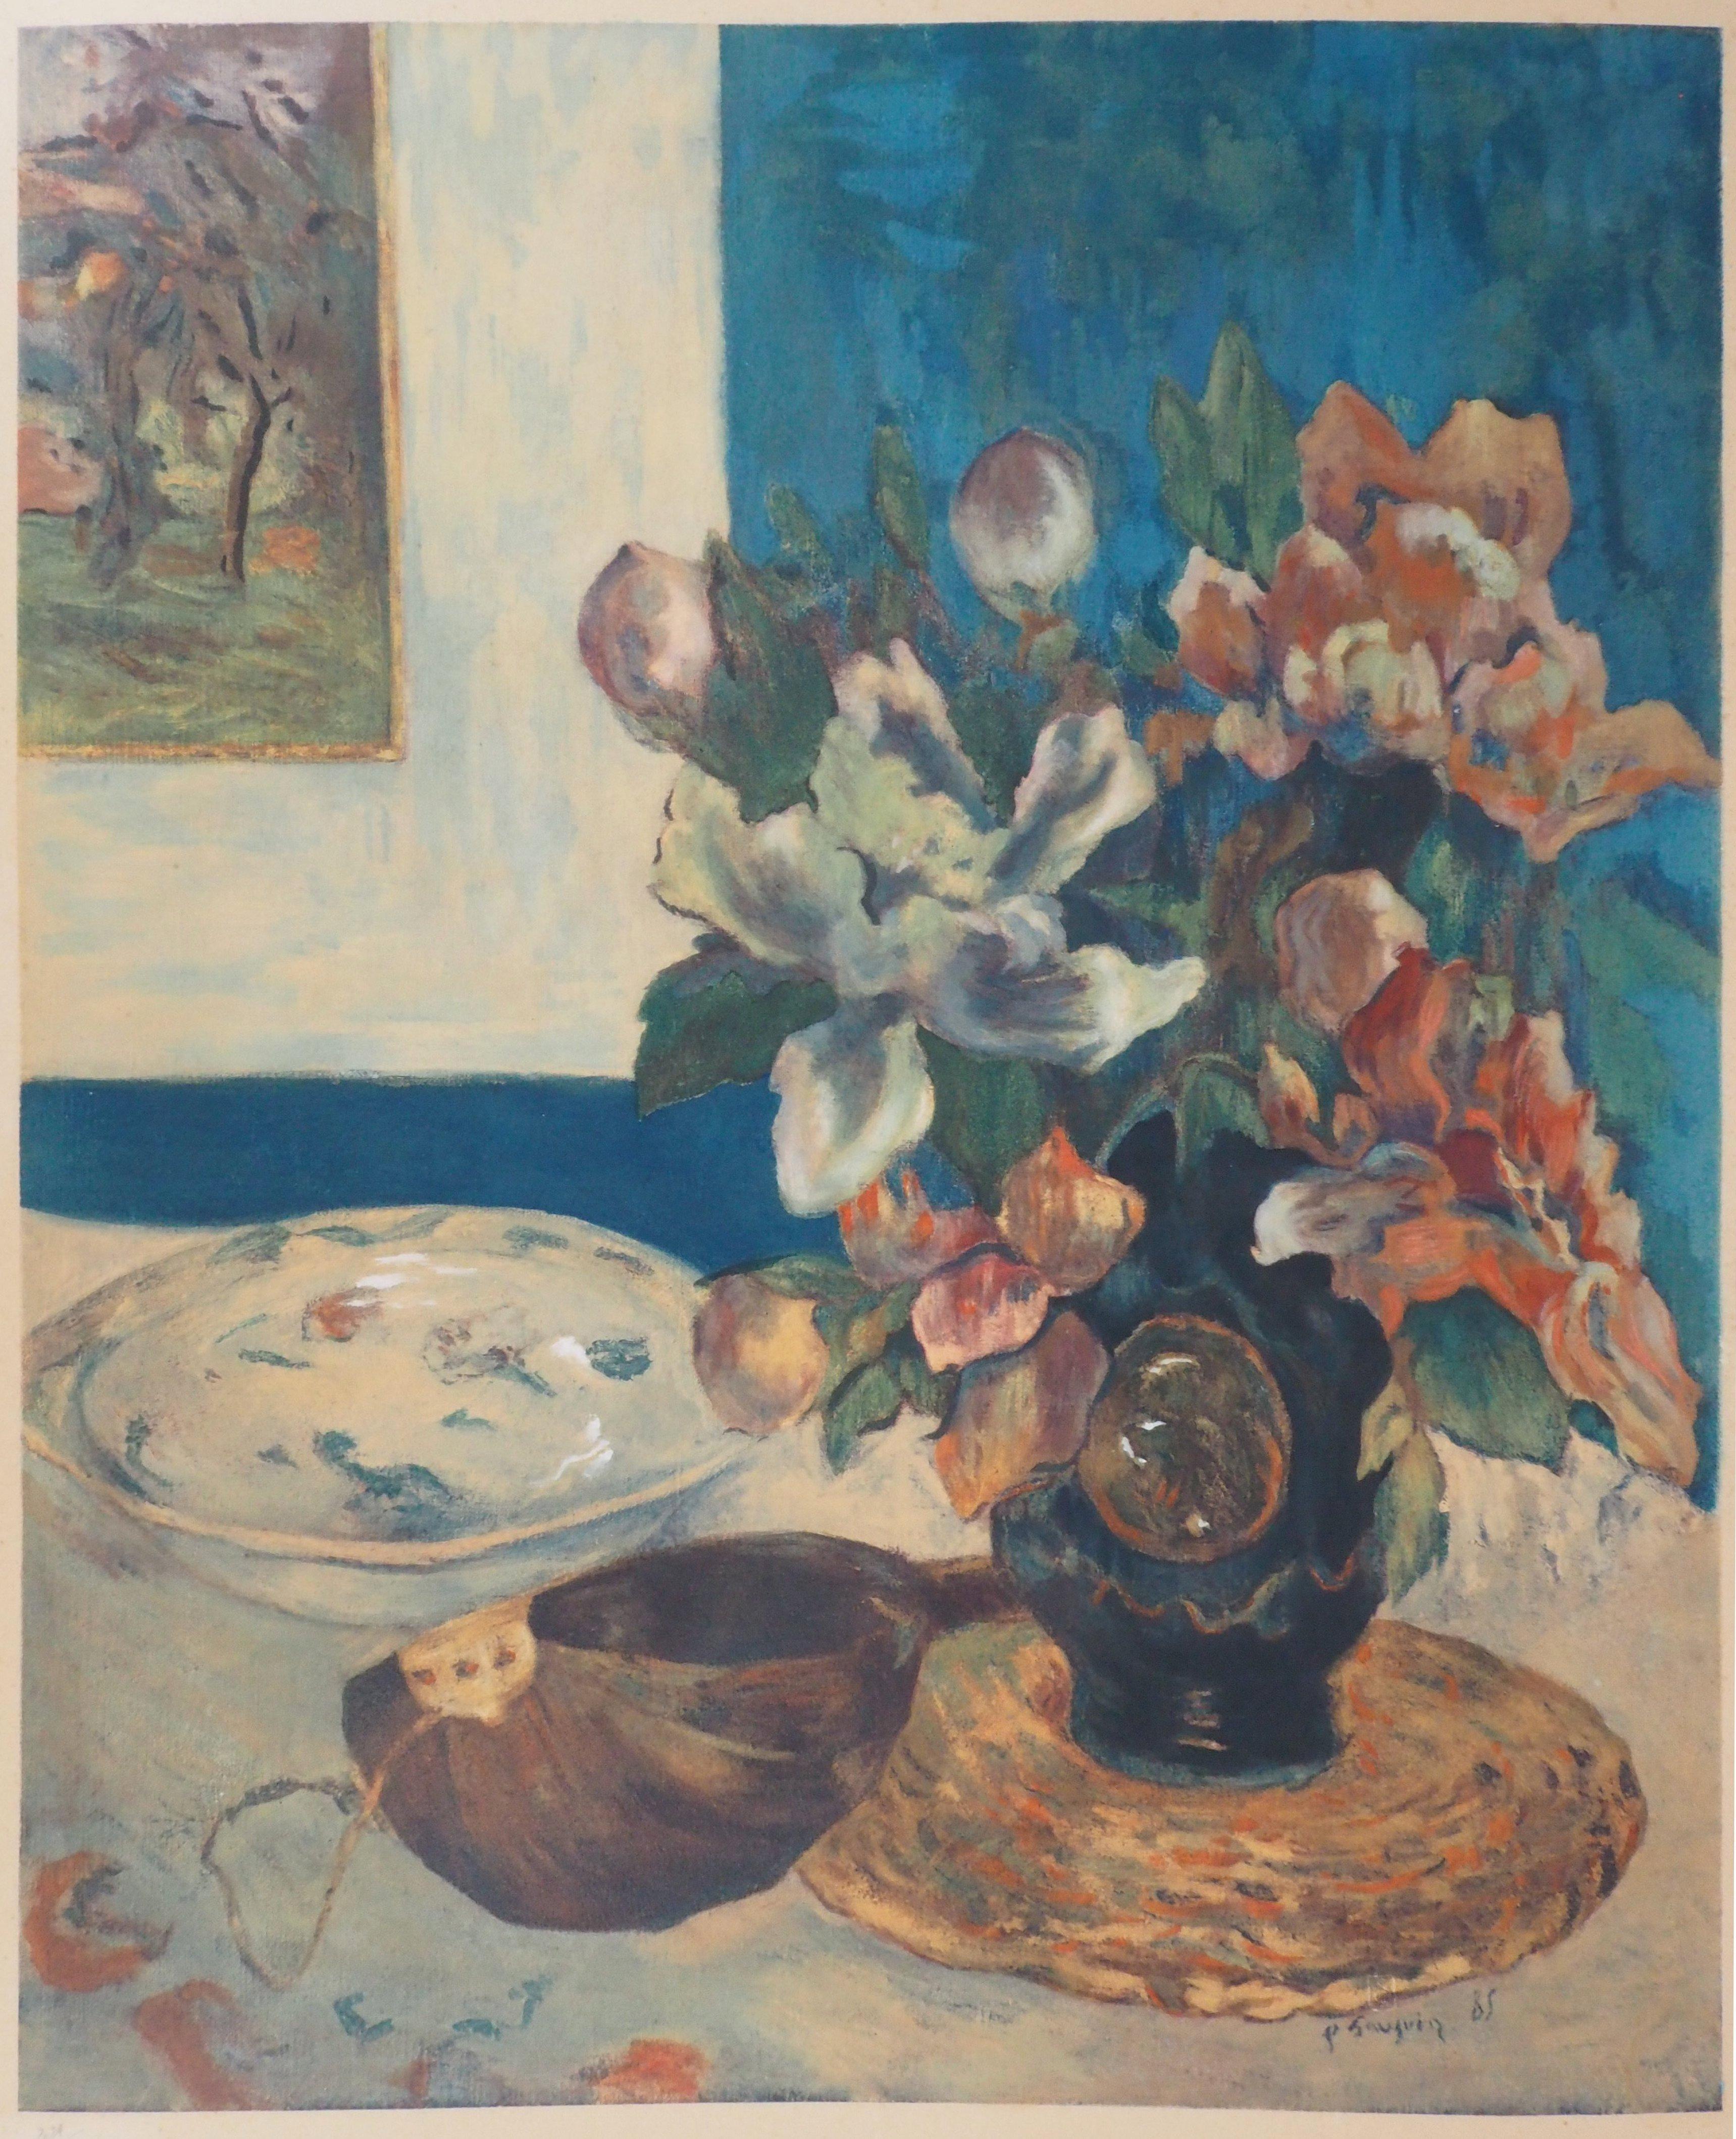 Stillleben mit Mandolin - Pochoir - Spitzer-Ausgabe um 1950 /250ex (Fauvismus), Print, von (after) Paul Gauguin